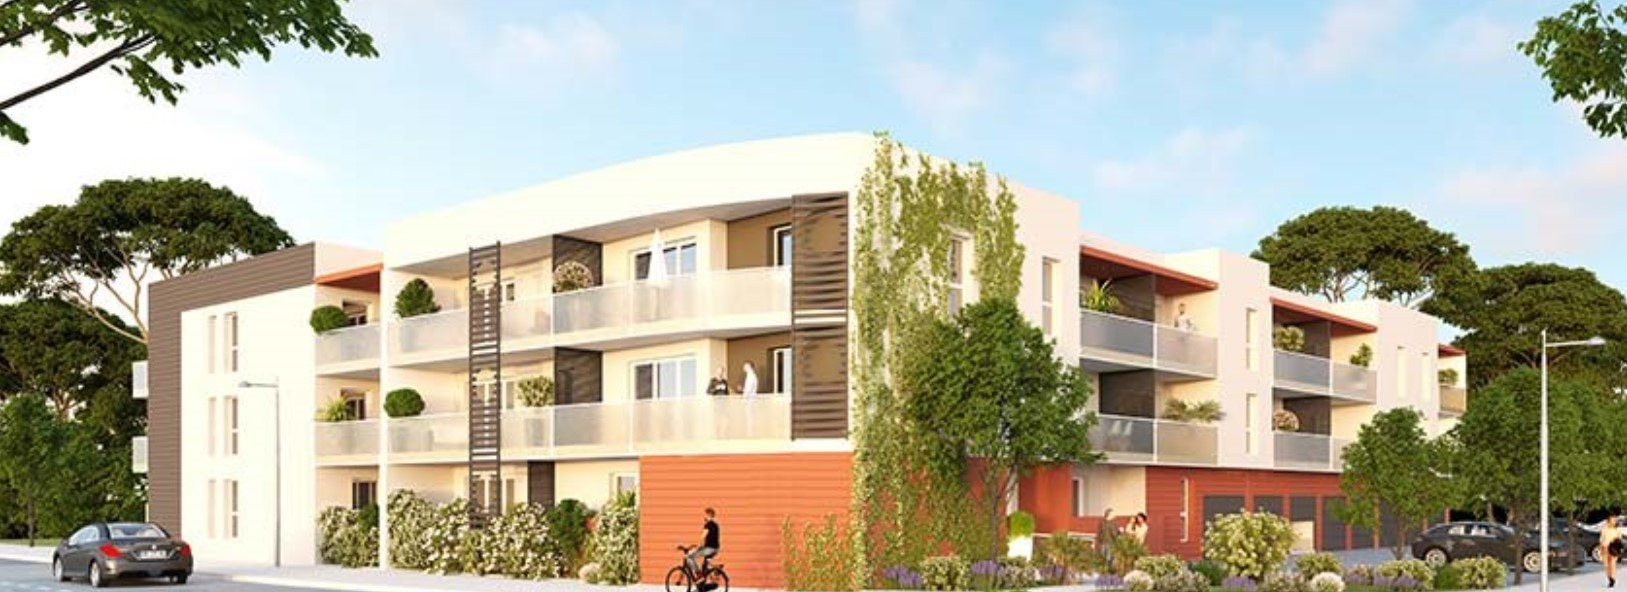 Nouvelle résidence neuve à Argelès-sur-Mer proche de la plage (2 à 3 pièces, 43 à 60 m²) argeles-sur-mer